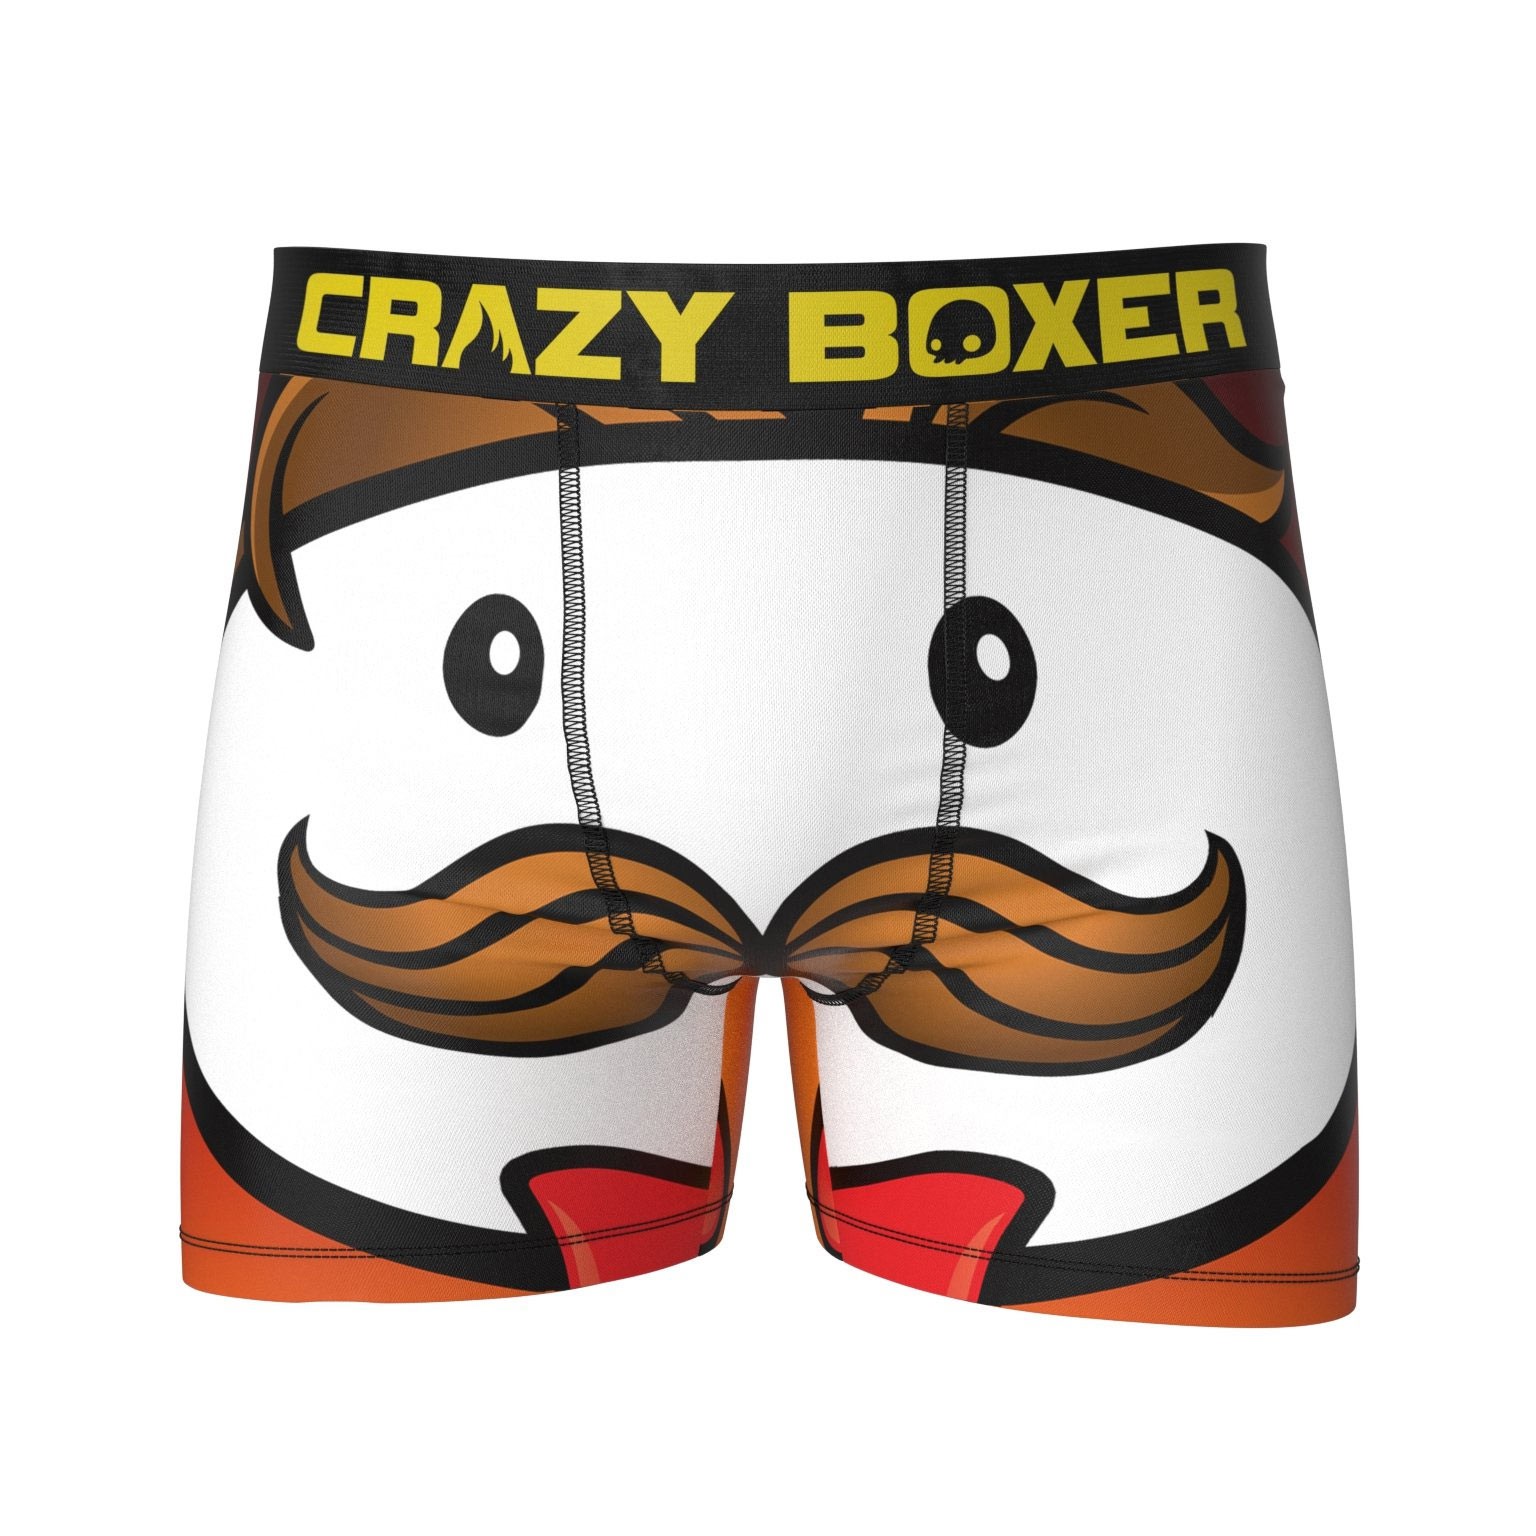 CRAZYBOXER Kellogg's Eggo; Men's Boxer Briefs, 3-Pack